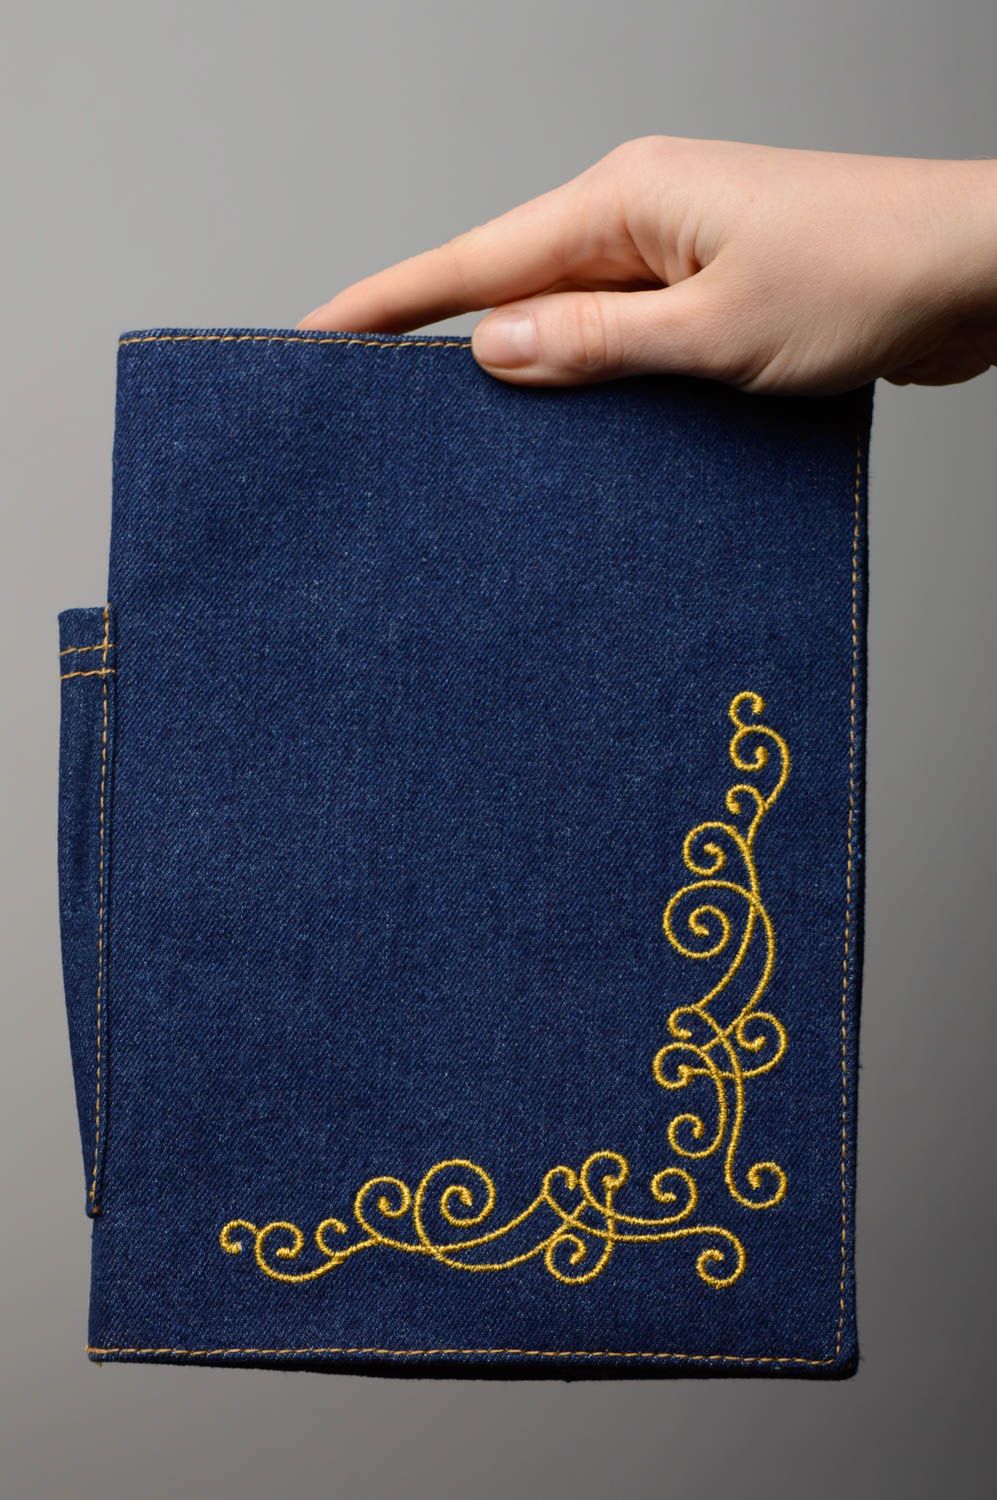 Copertina per taccuino fatta a mano di jeans con ricamo copertina blocco note foto 4